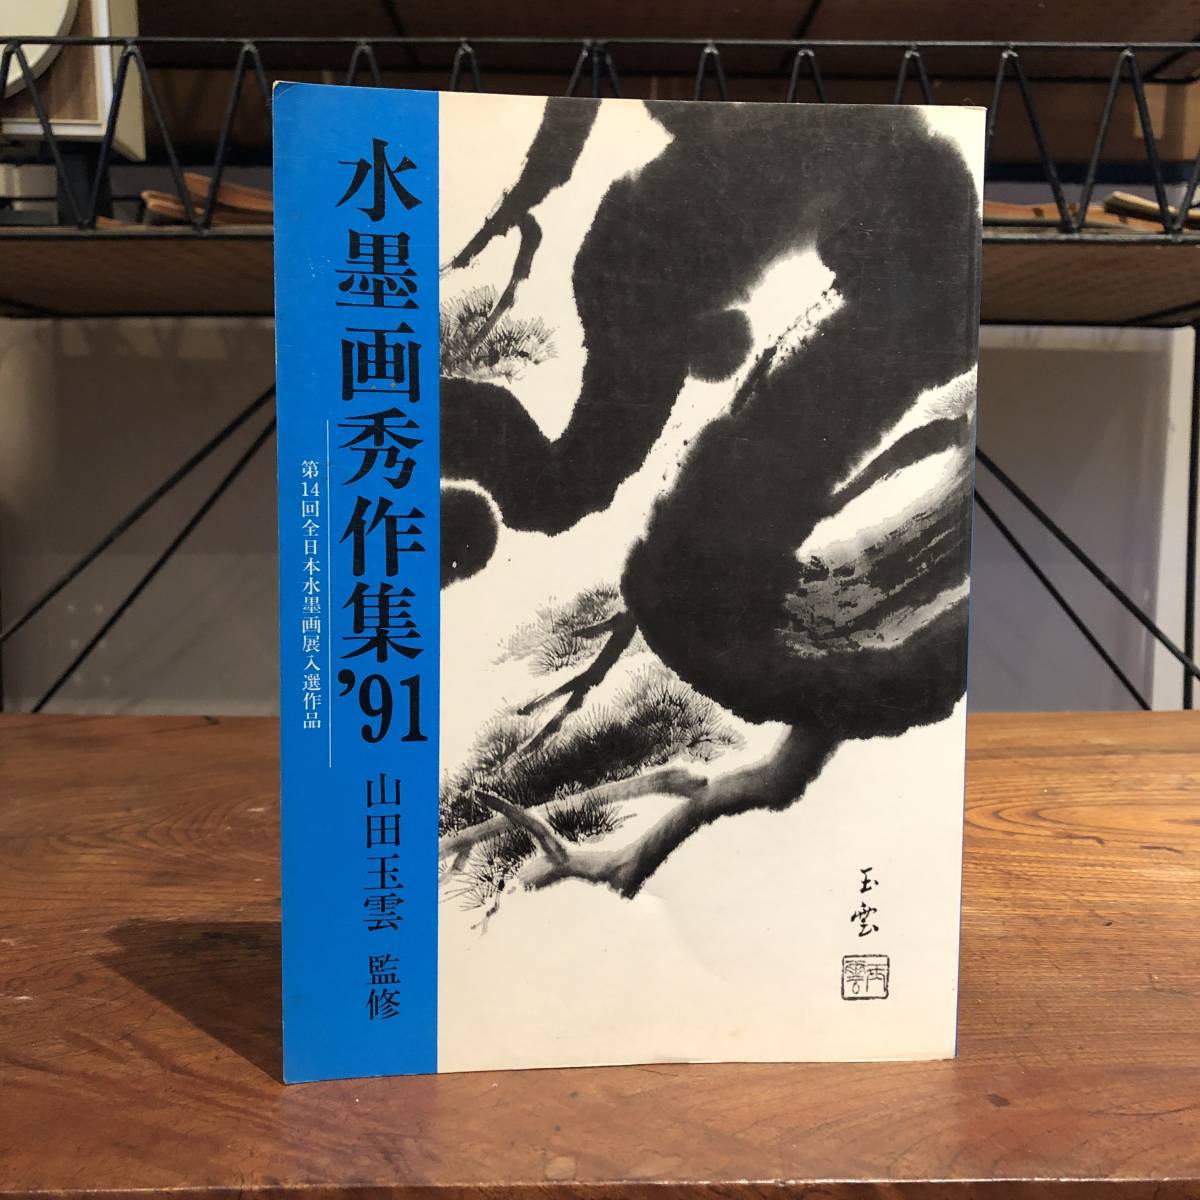 सी इंक पेंटिंग मास्टरपीस का संग्रह '91 14वीं अखिल जापान इंक पेंटिंग प्रदर्शनी चयनित कार्य यामादा ग्योकुन द्वारा पर्यवेक्षित इंक पेंटिंग इंक पेंटिंग इंक ड्राइंग तकनीक, चित्रकारी, कला पुस्तक, संग्रह, कला पुस्तक